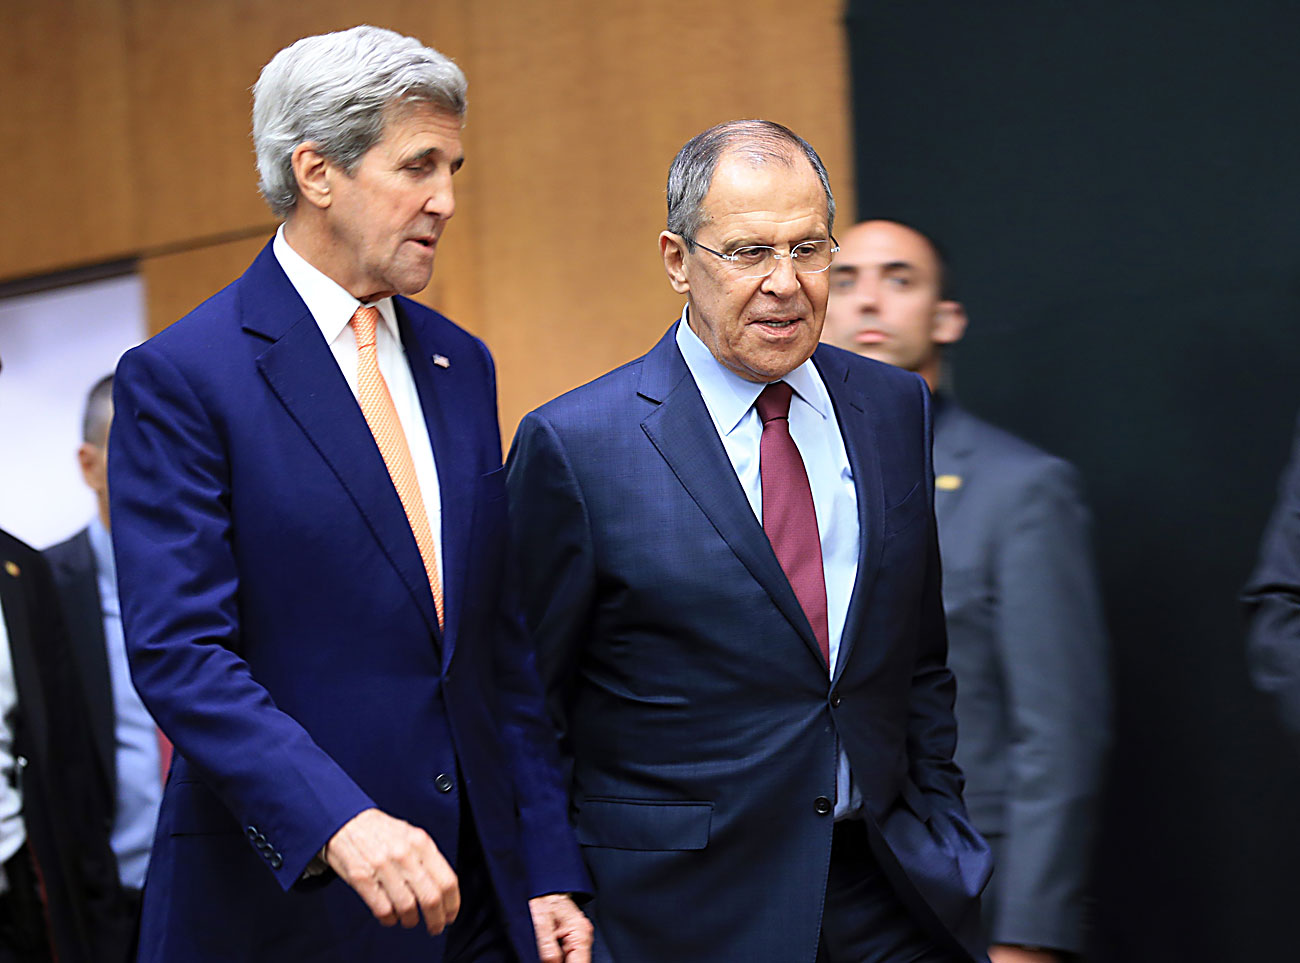 Ruski zunanji minister Sergej Lavrov in ameriški državni sekretar Sergej Lavrov na pogajanjih v Ženevi